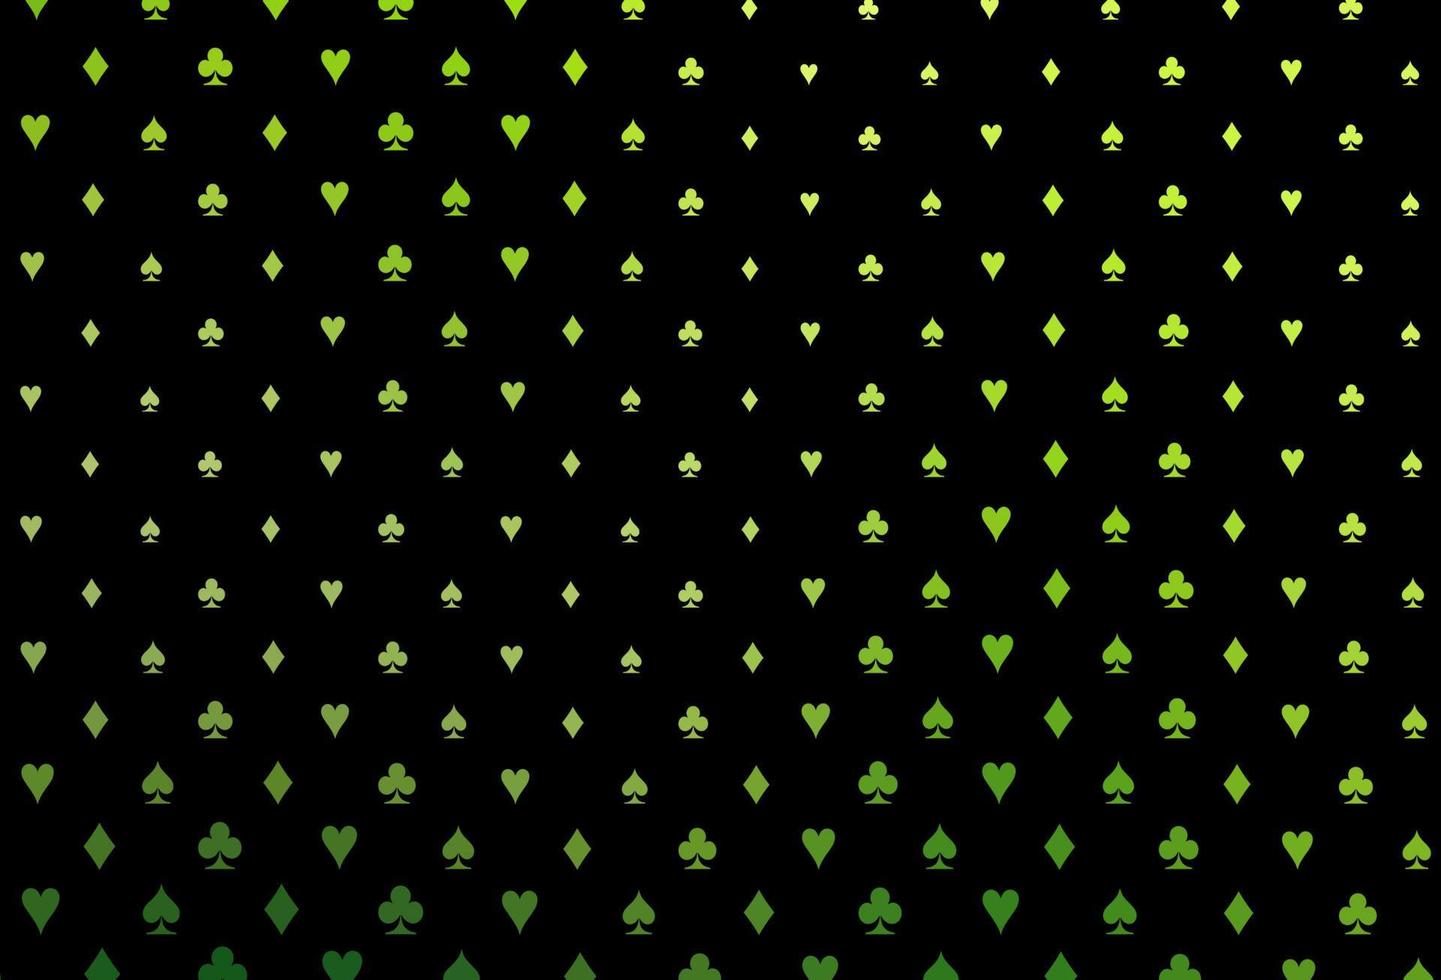 trama vettoriale verde scuro con carte da gioco.